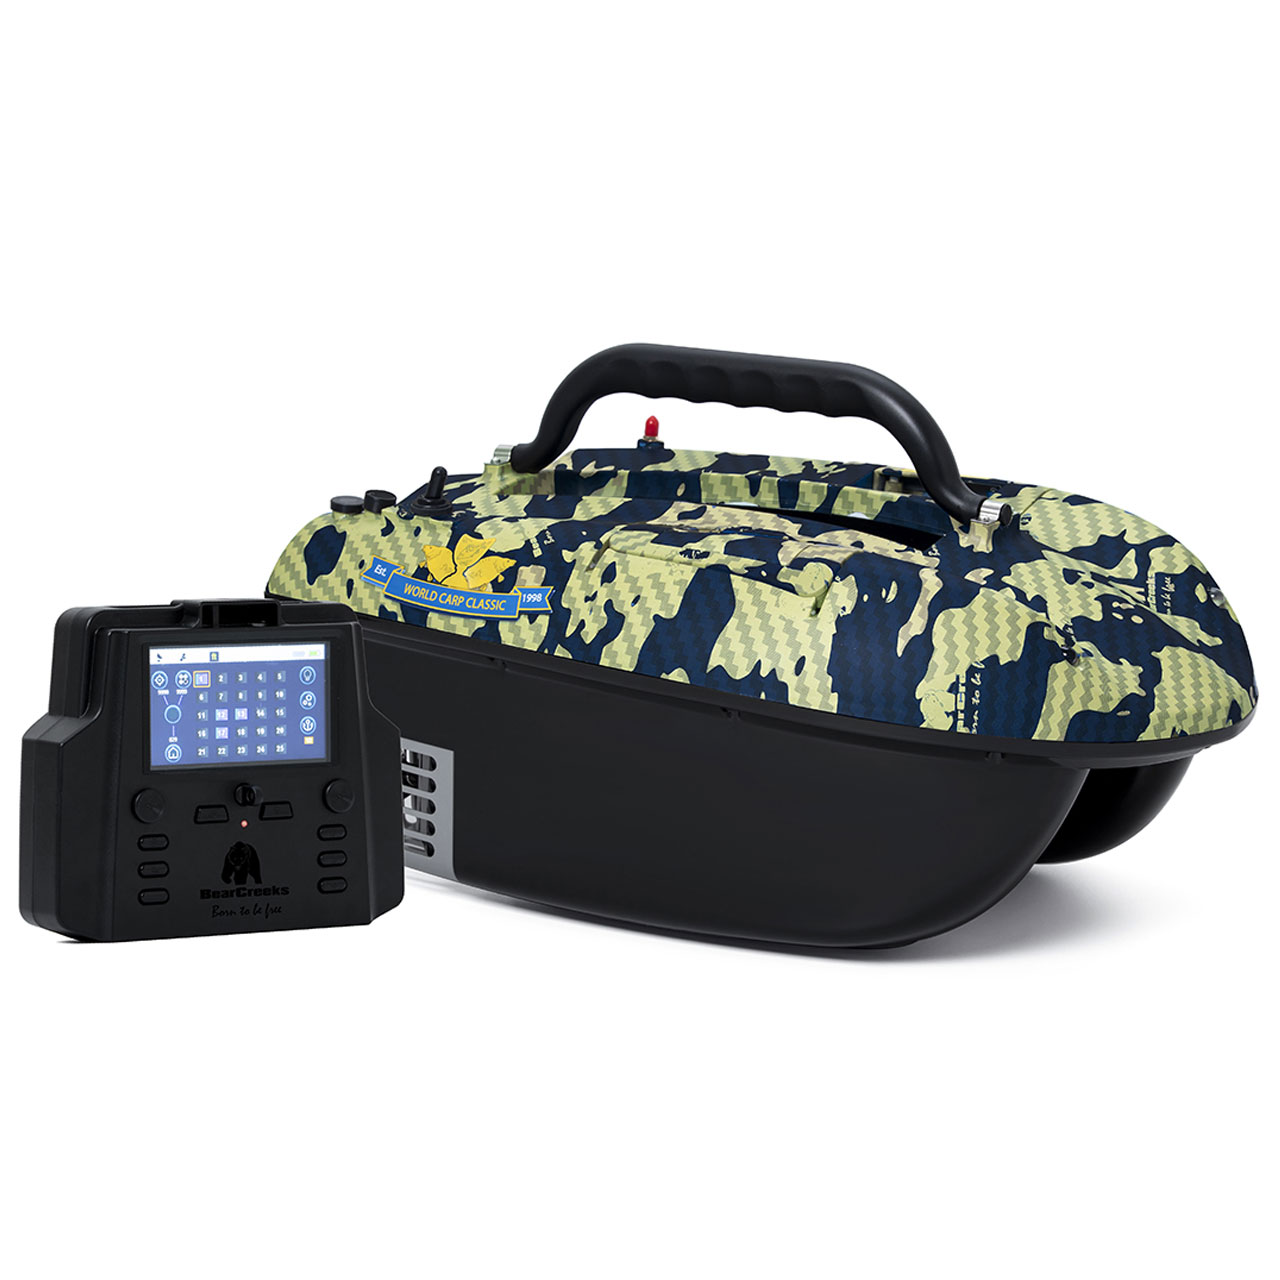 Прикормочный кораблик для рыбалки BearCreeks iPilot18 с GPS Автопилотом и опциональным эхолотом Fishfinder